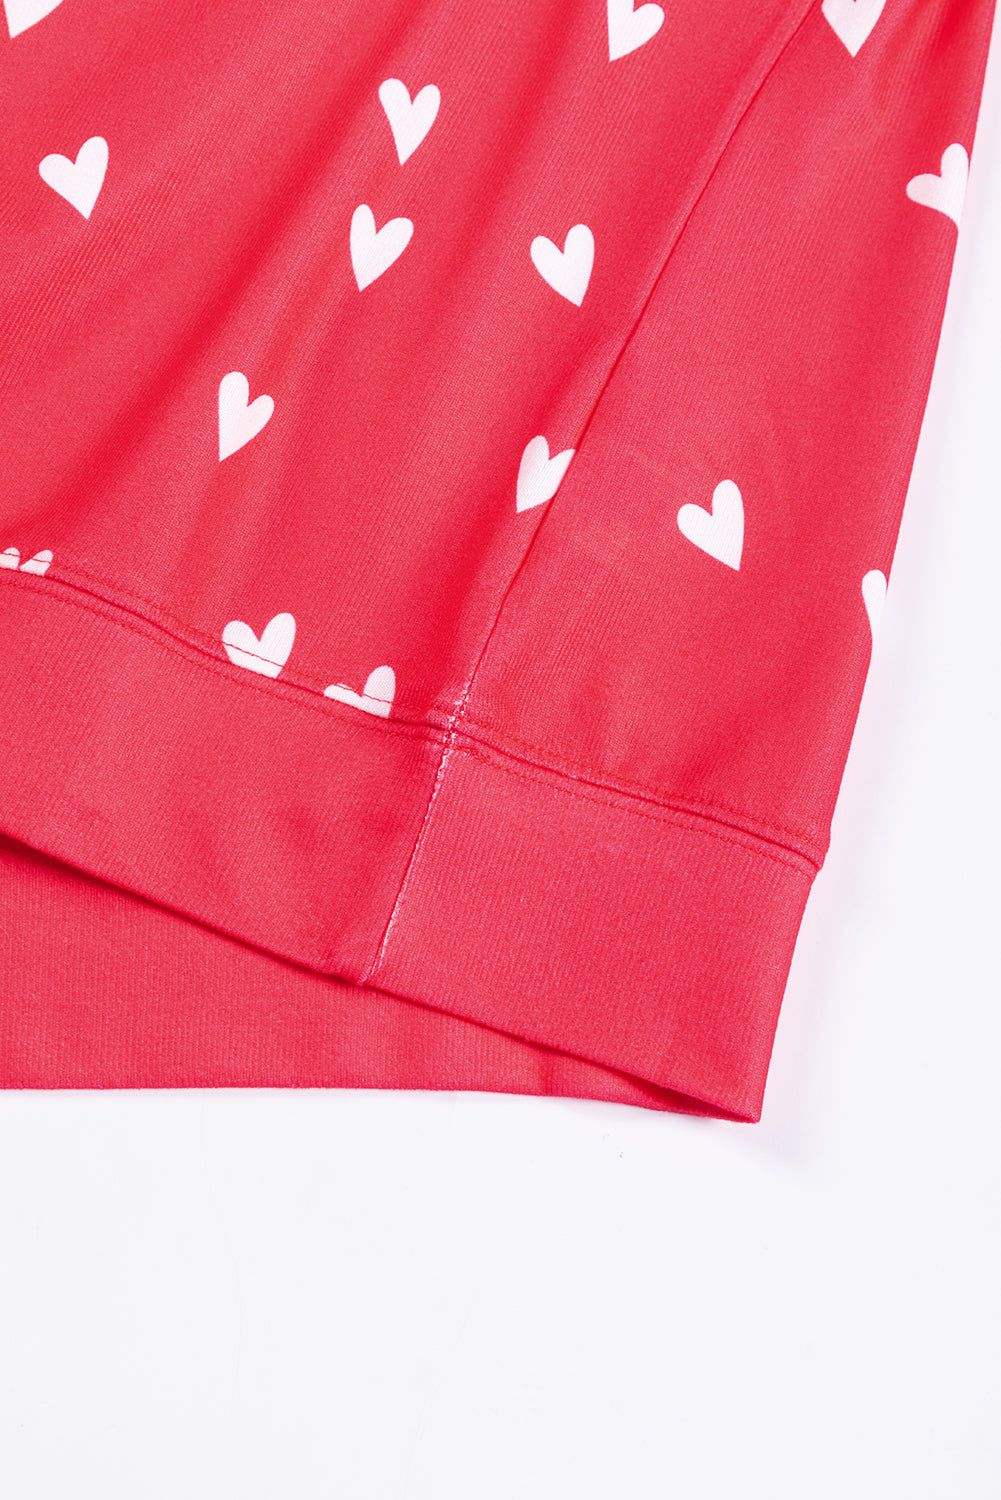 Ognjeno rdeči komplet hlač s potiskom srčkov za Valentinovo